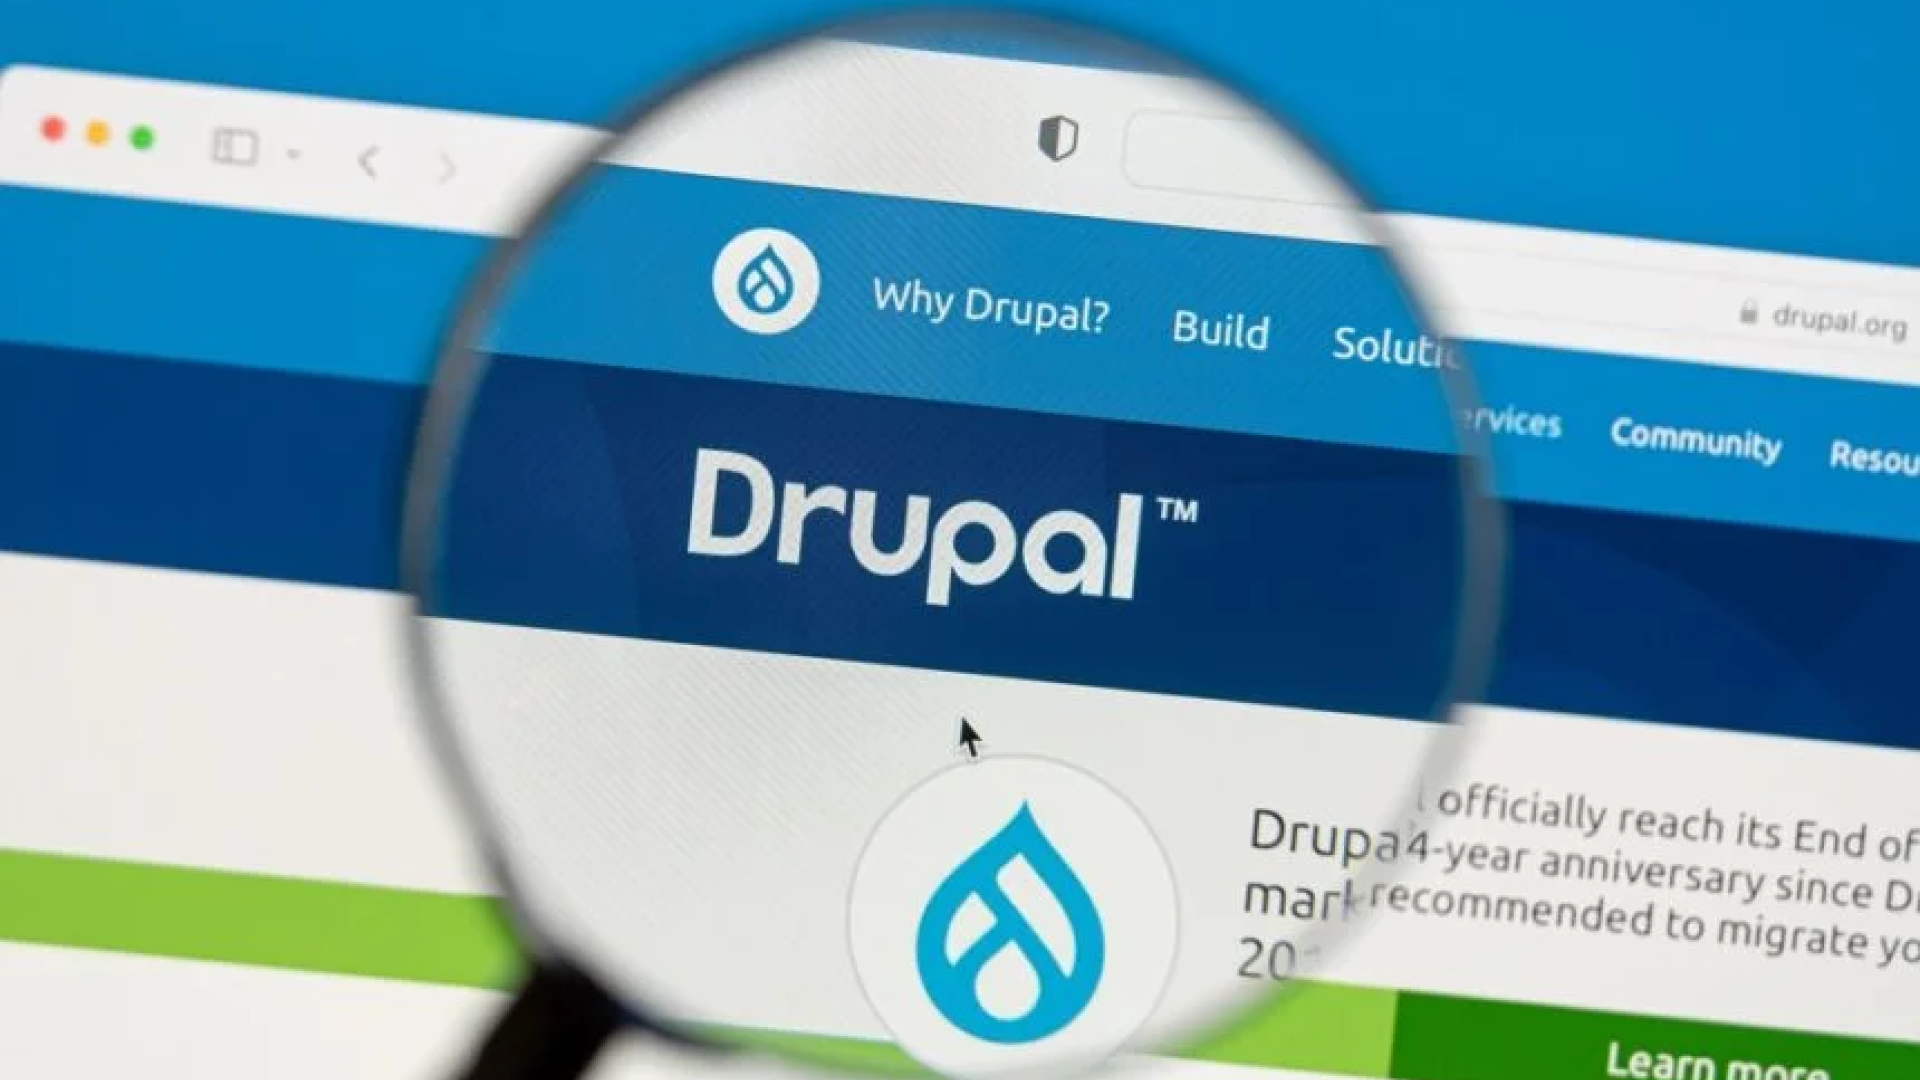 drupal.org image